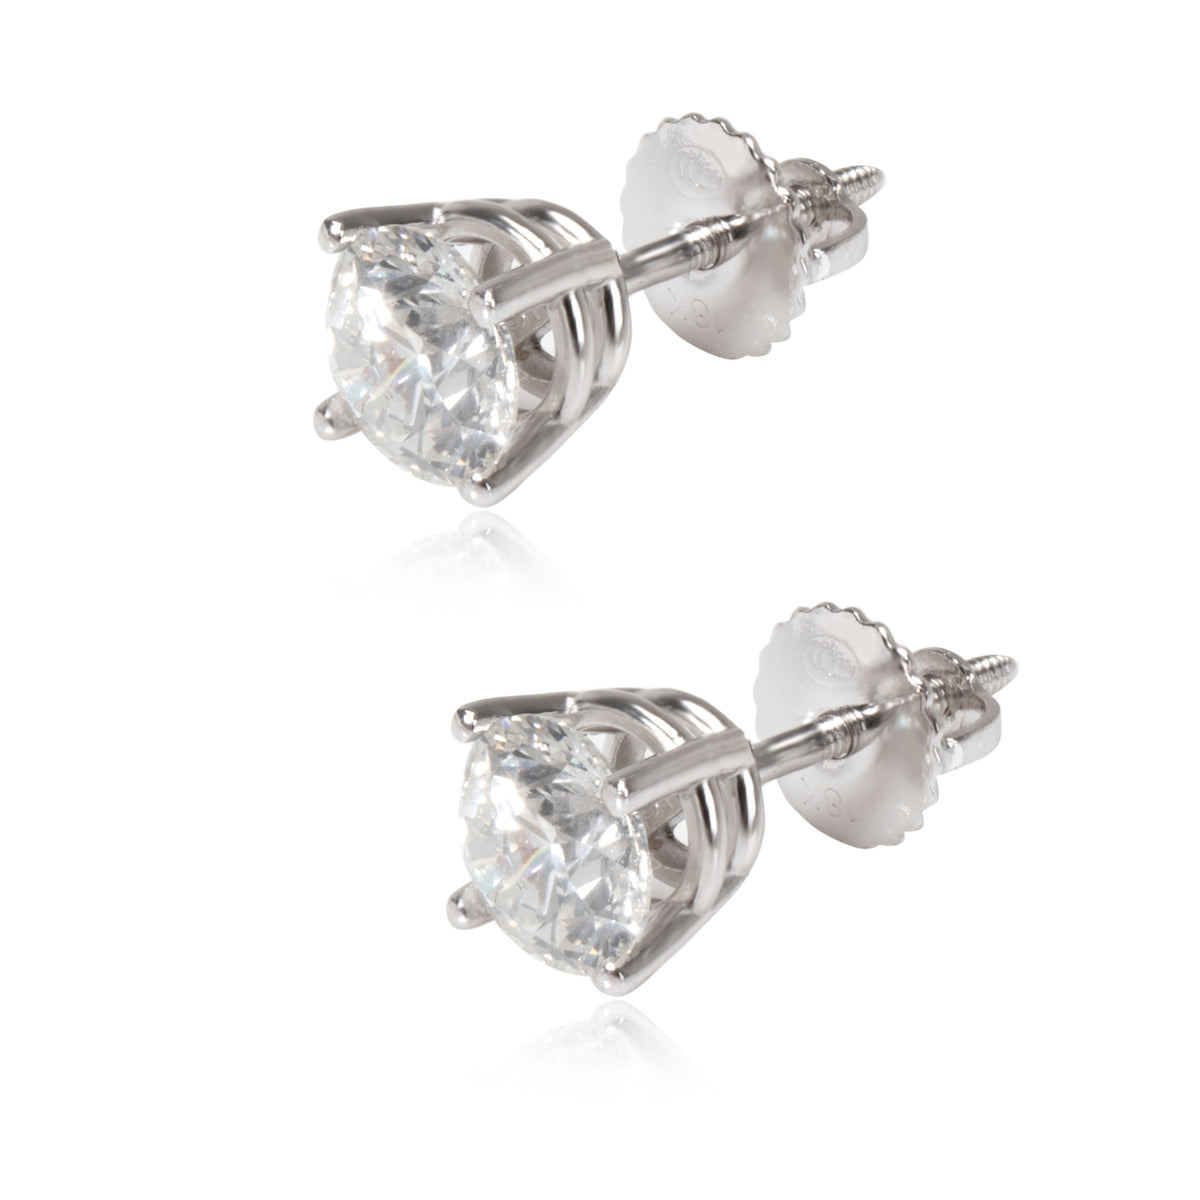 Diamond Stud Earrings in 18K White Gold (1.25 ctw I-J/I1-I2 )